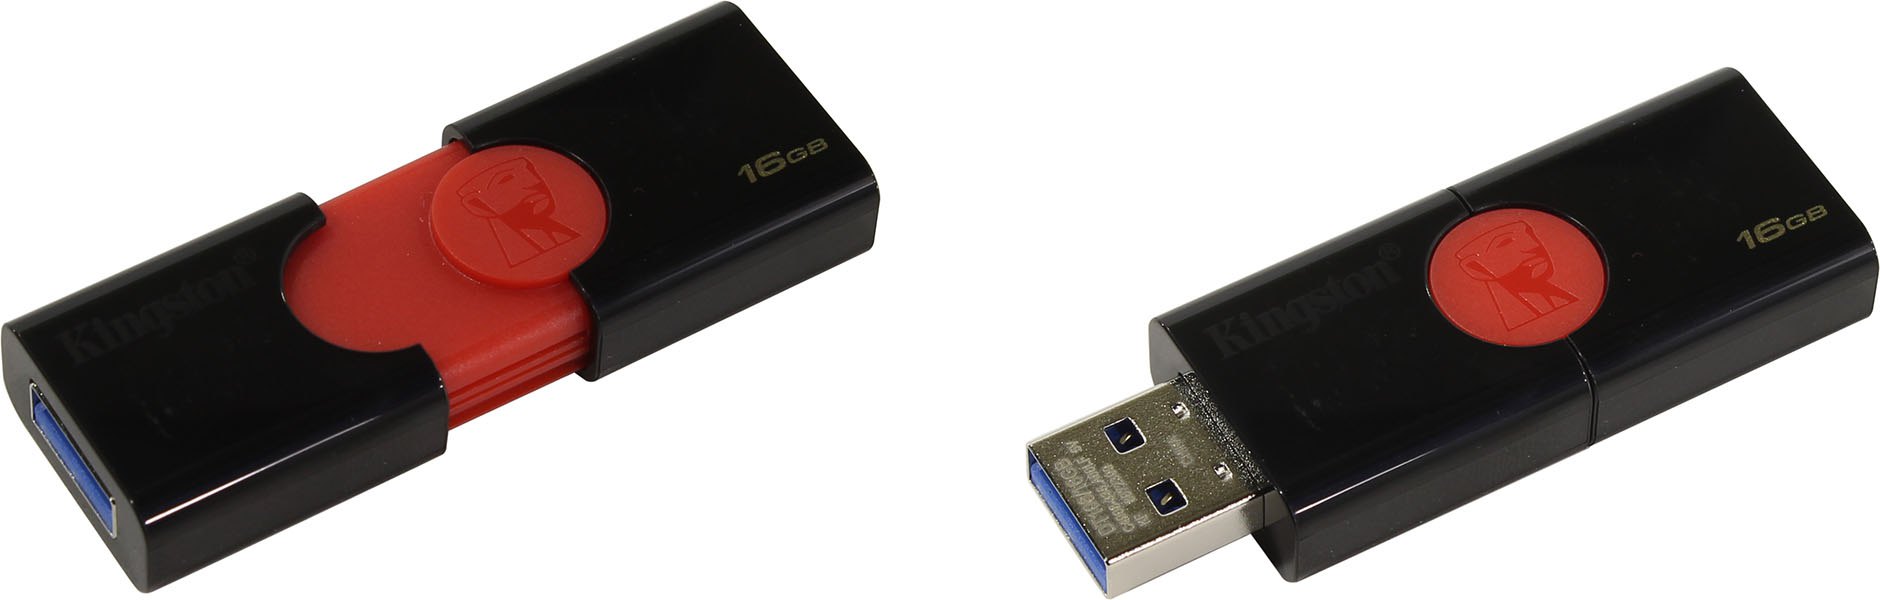 Флэшдрайв 16Gb KINGSTON DataTraveler 106, USB 3.0  (DT106/16GB)